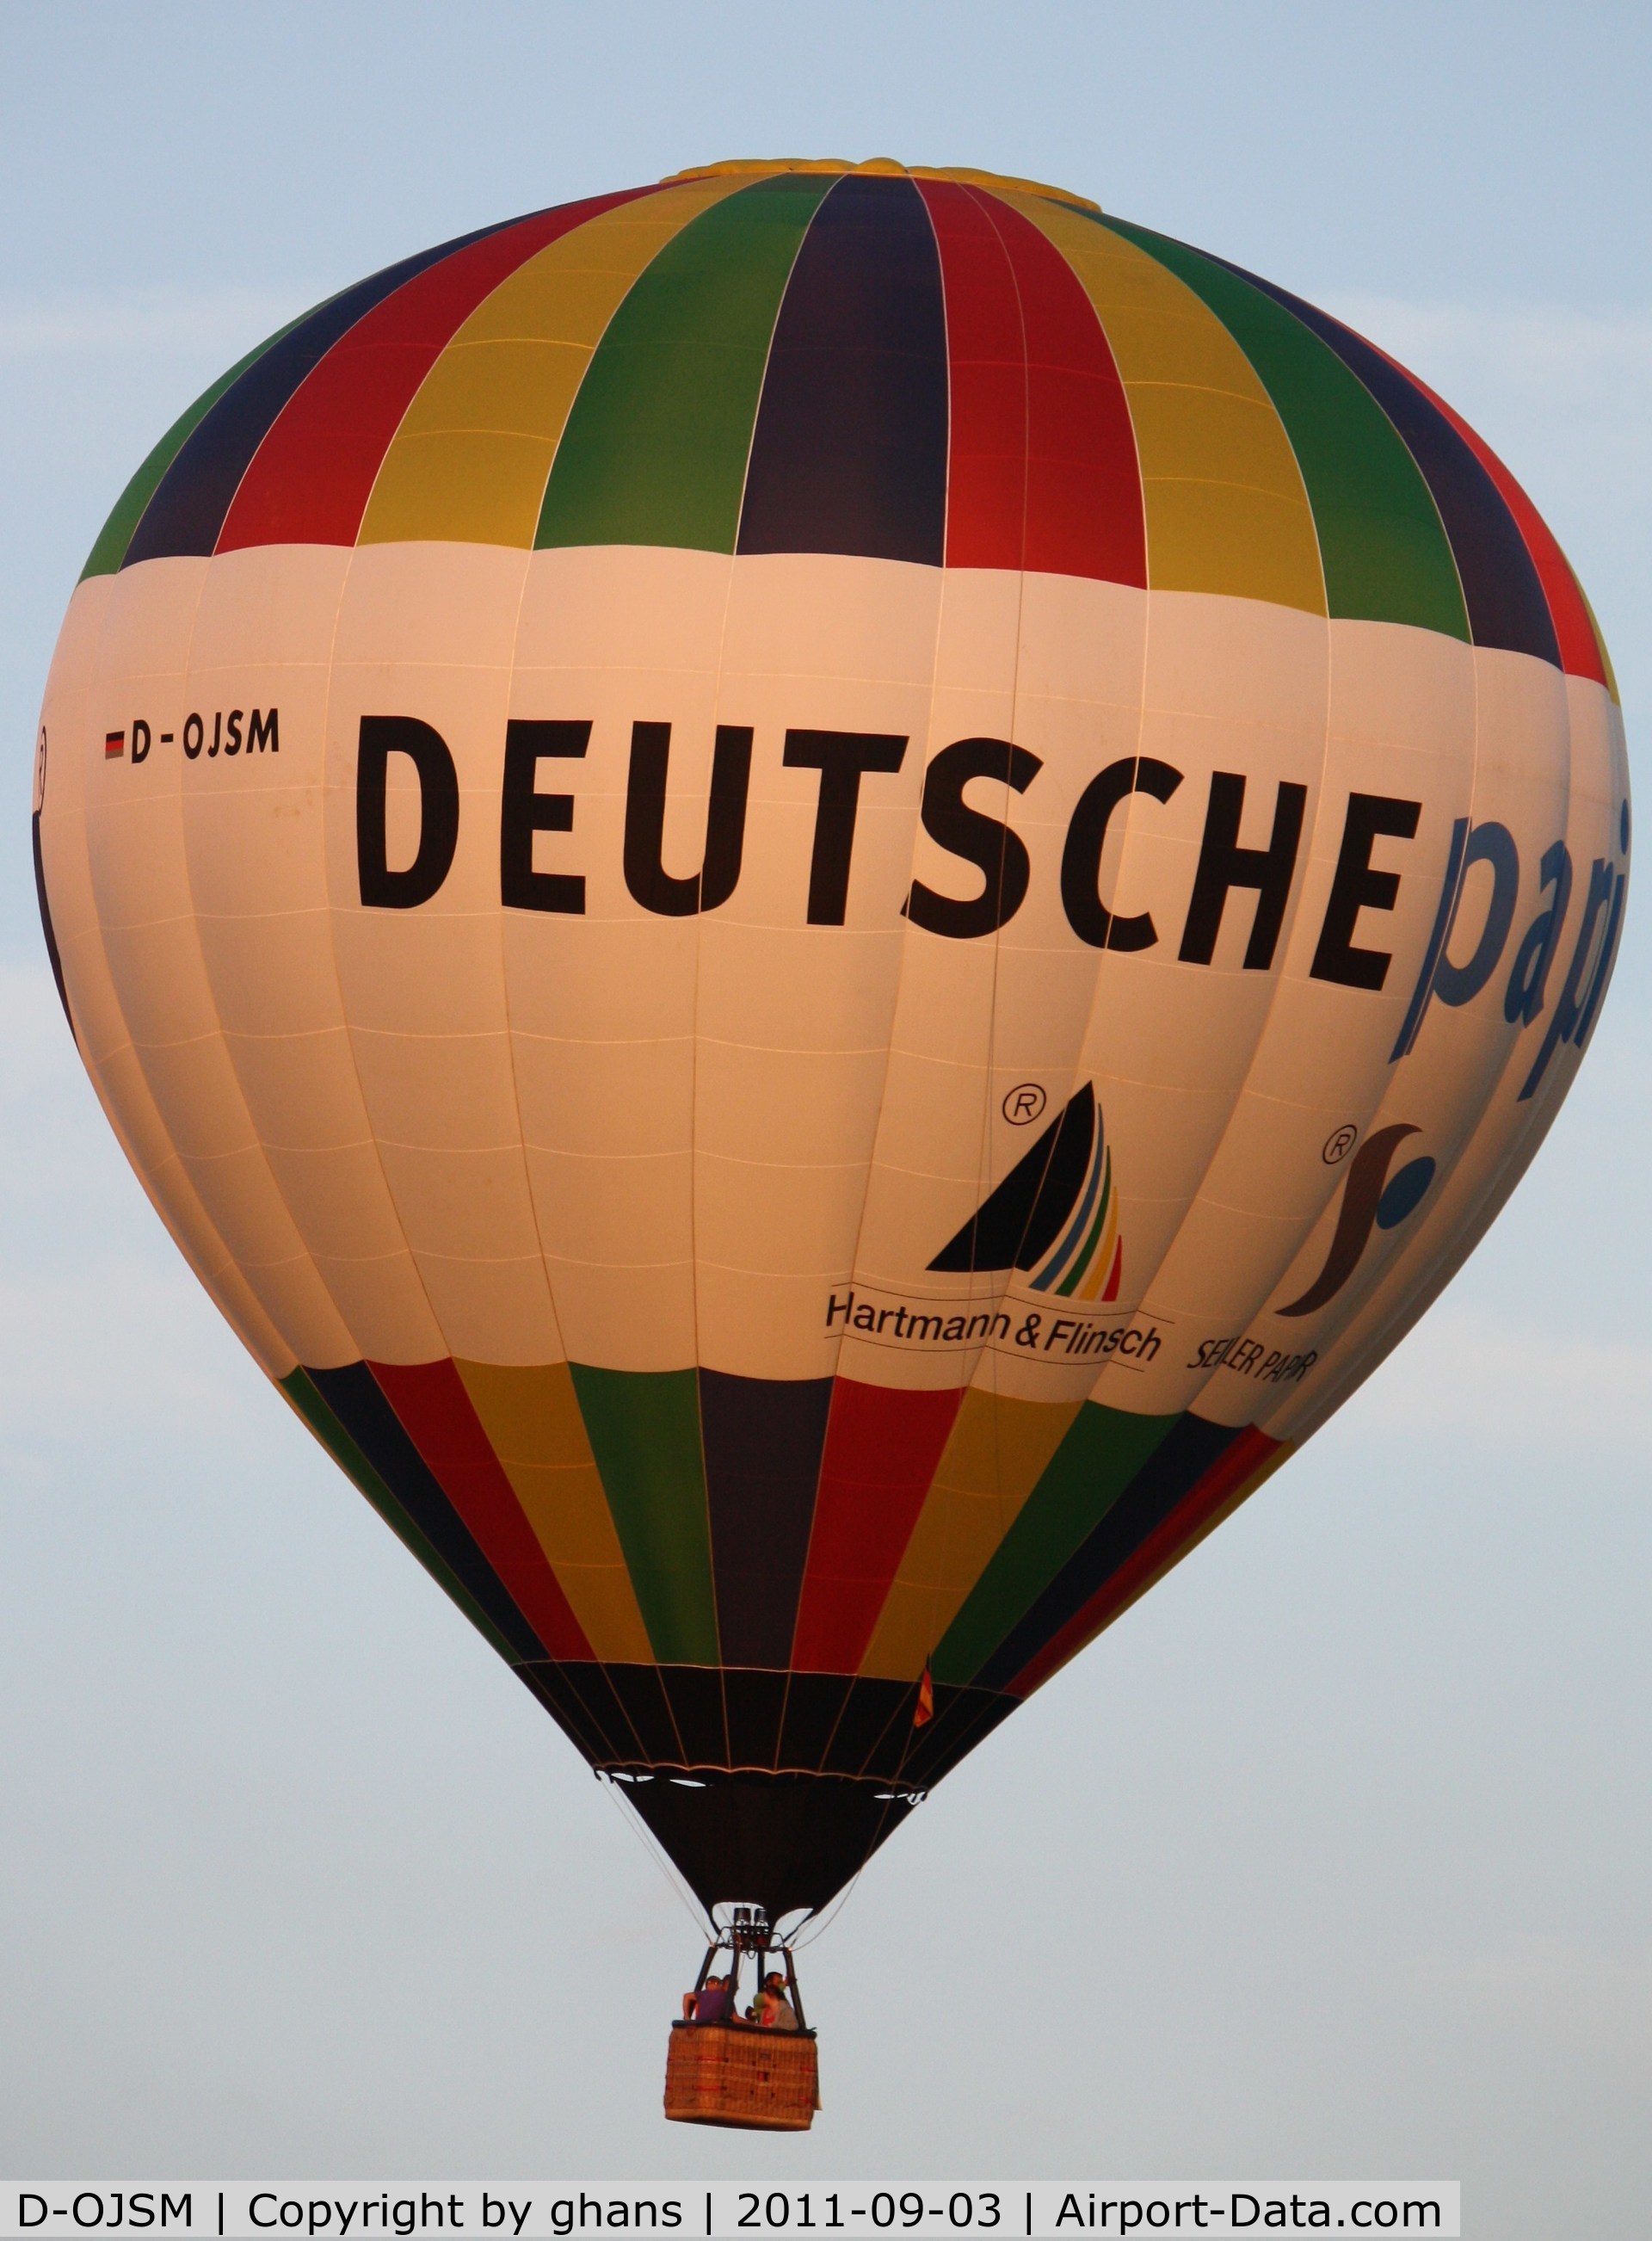 D-OJSM, 2002 Schroeder Fire Balloons G34/24 C/N 980, WIM 2011
'Deutsche Papier - Reacto'